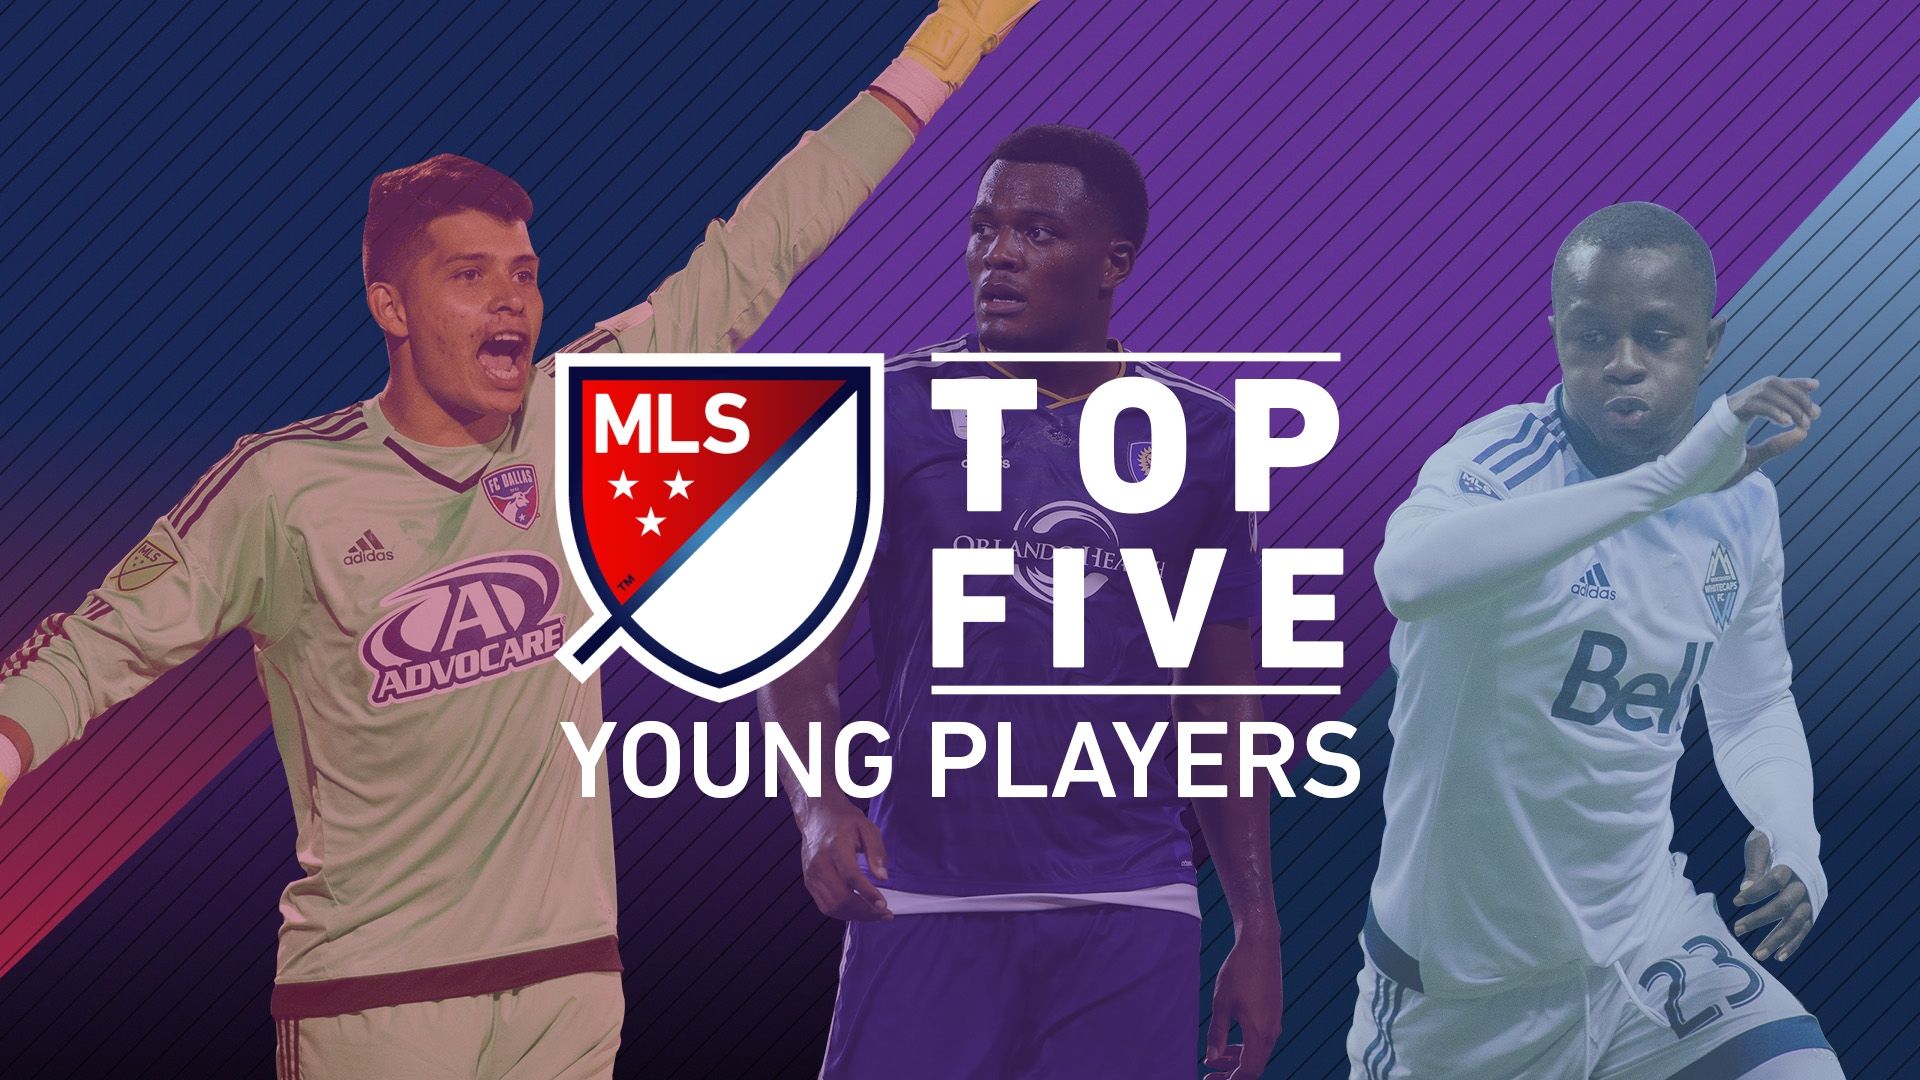 Video via MLS Top 5 Young Players in MLS ESPN Video